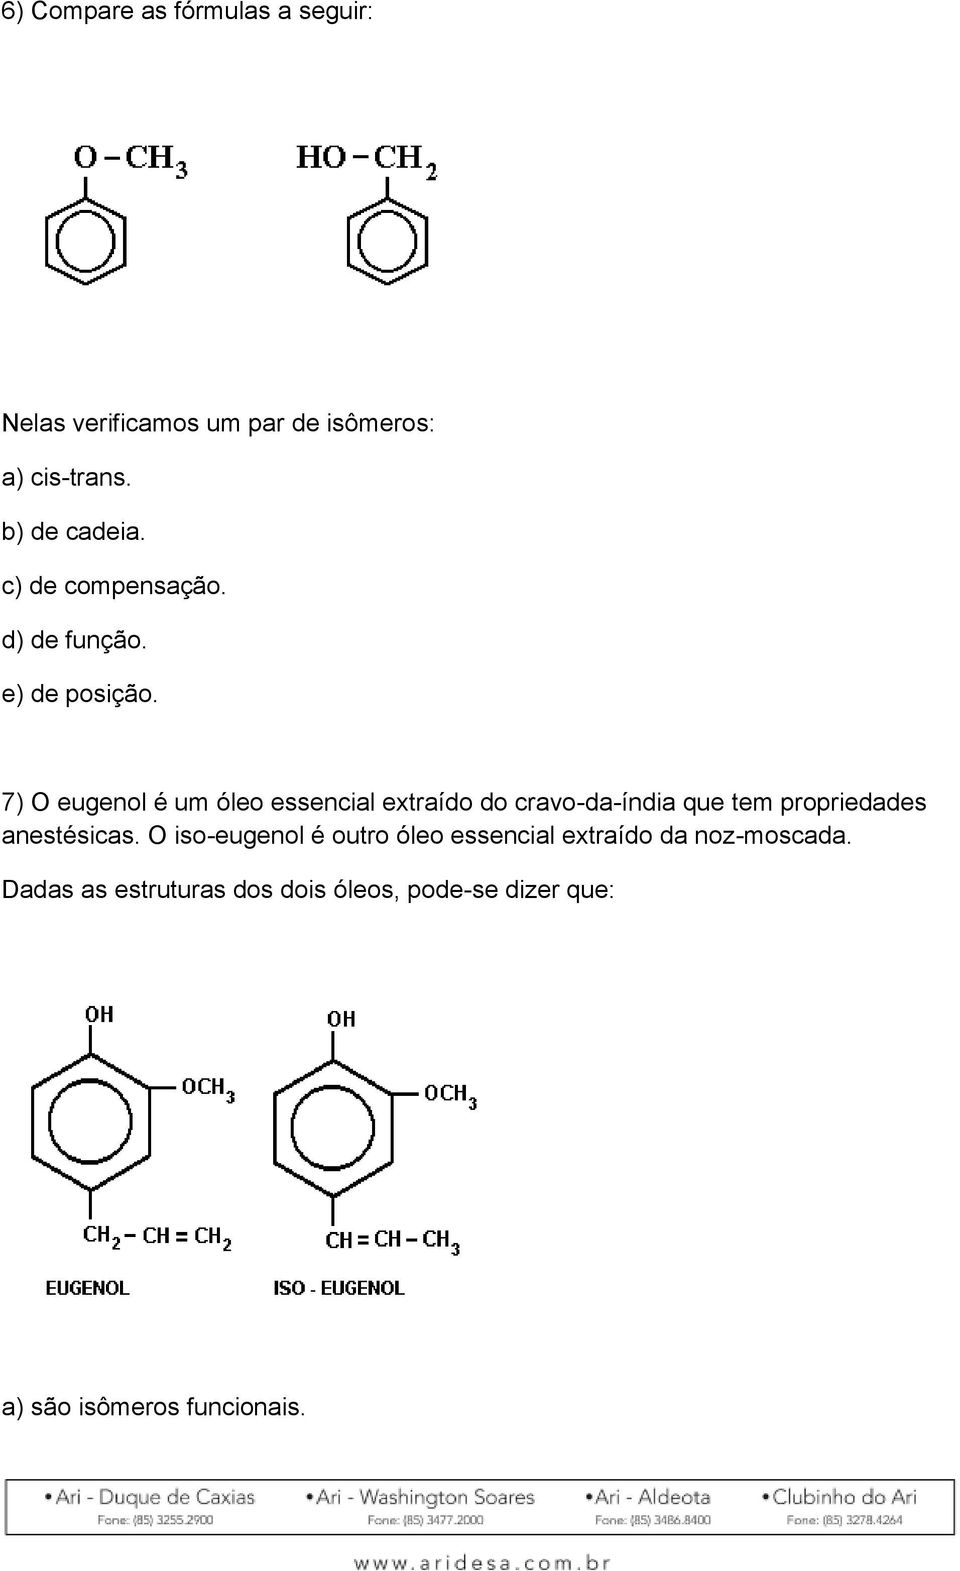 7) O eugenol é um óleo essencial extraído do cravo-da-índia que tem propriedades anestésicas.